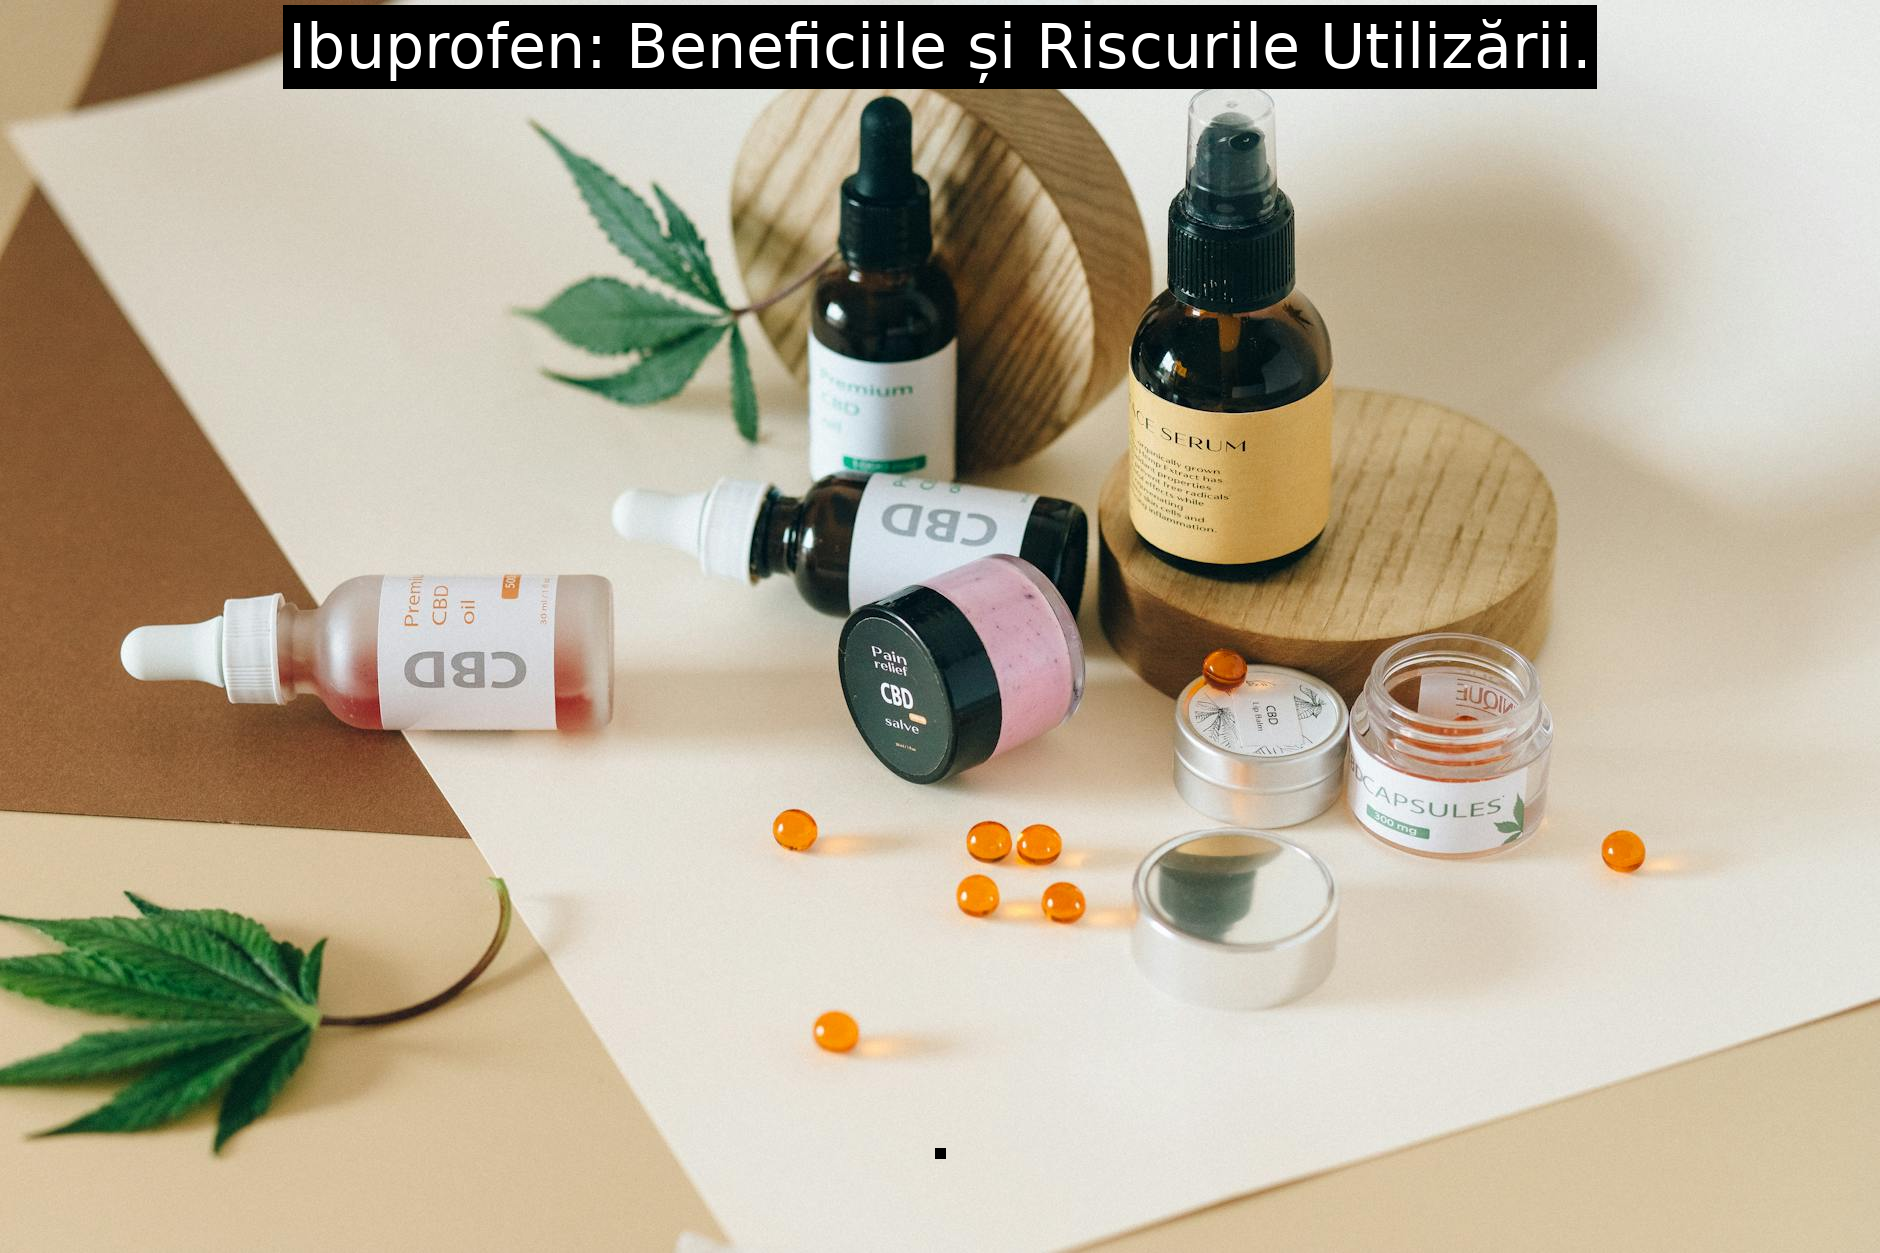 Ibuprofen: Beneficiile și Riscurile Utilizării.